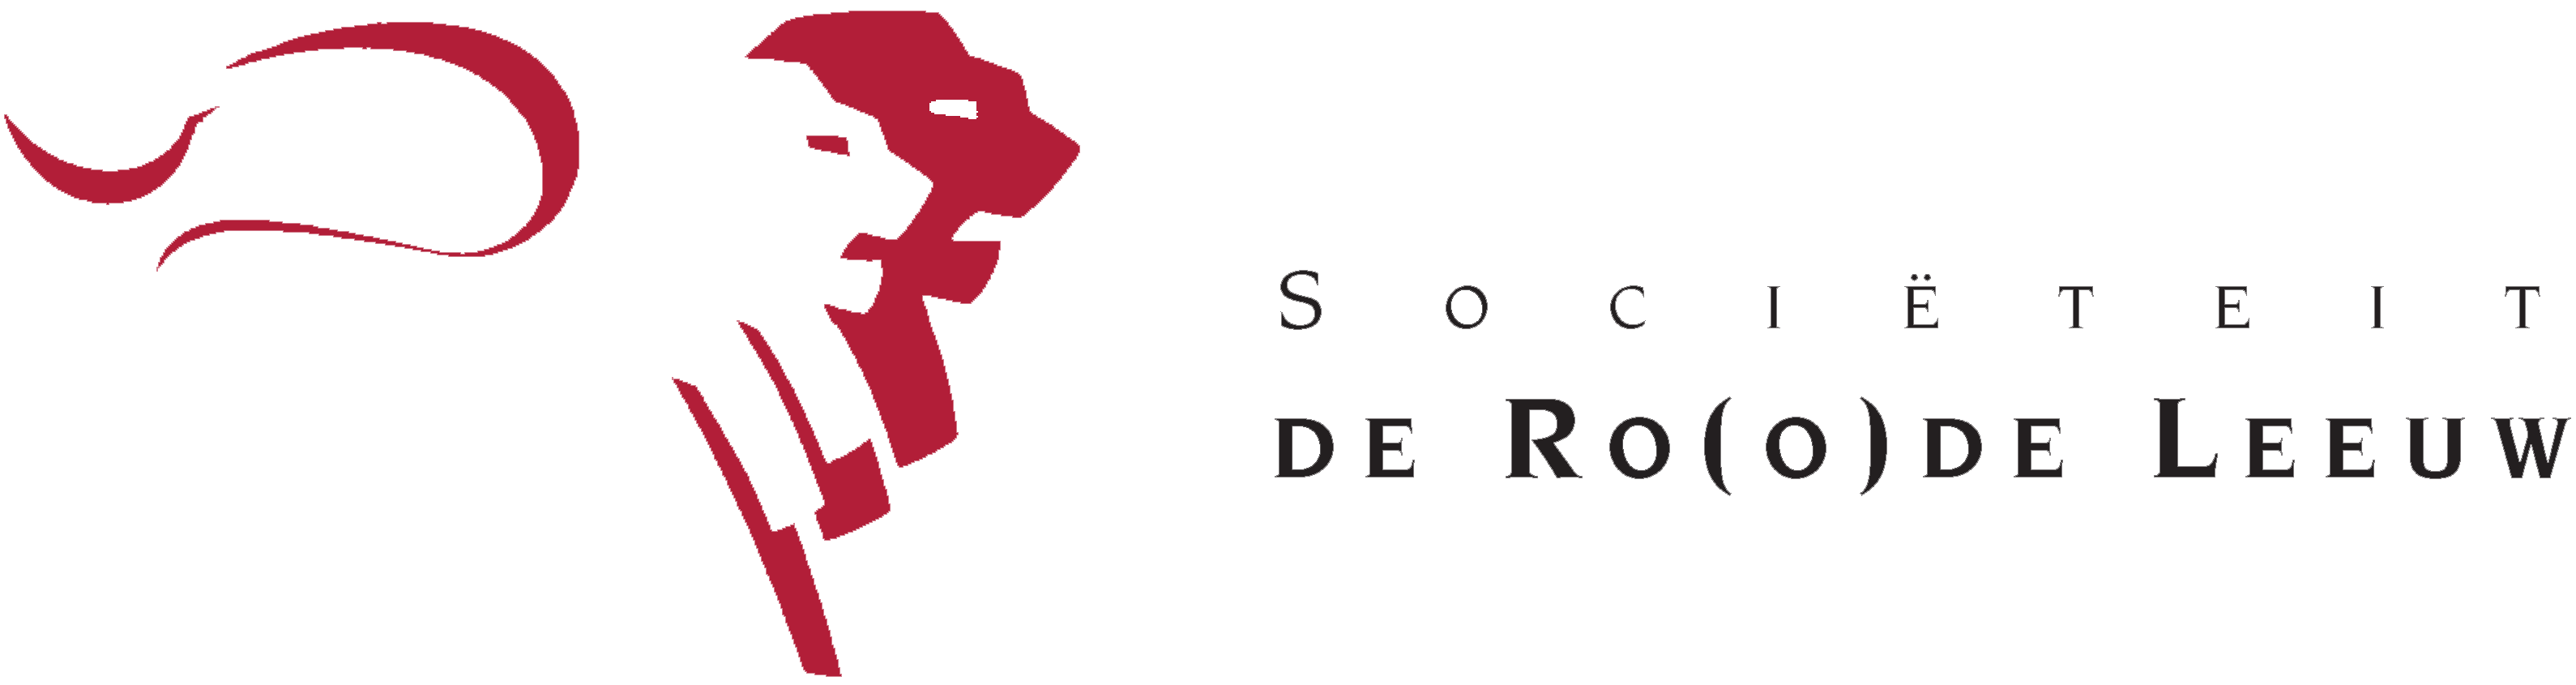 Societeit De Roode Leeuw logo